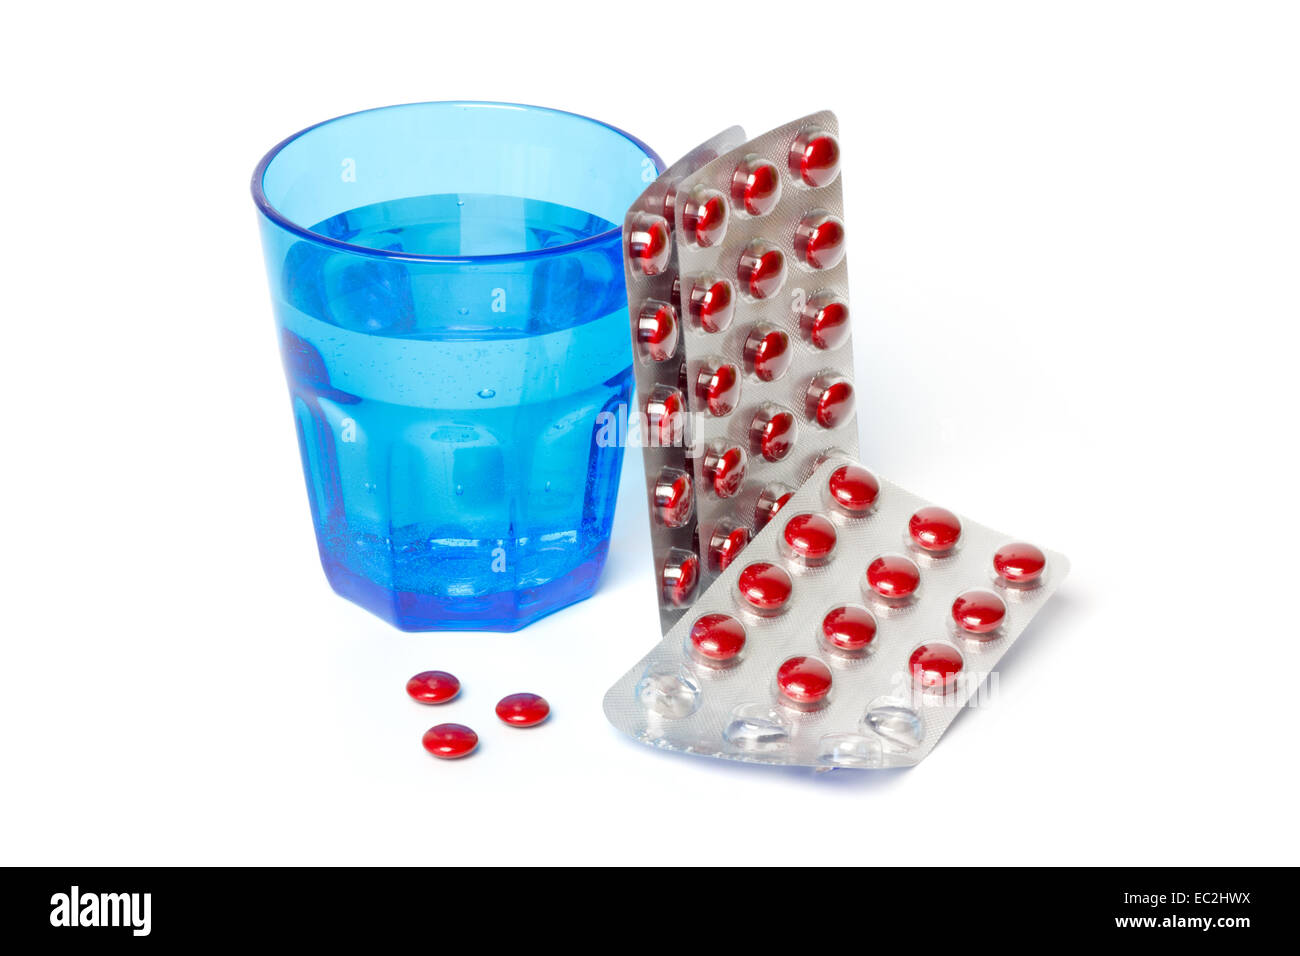 Strisce di pillole e un vetro blu con acqua contro uno sfondo bianco Foto Stock